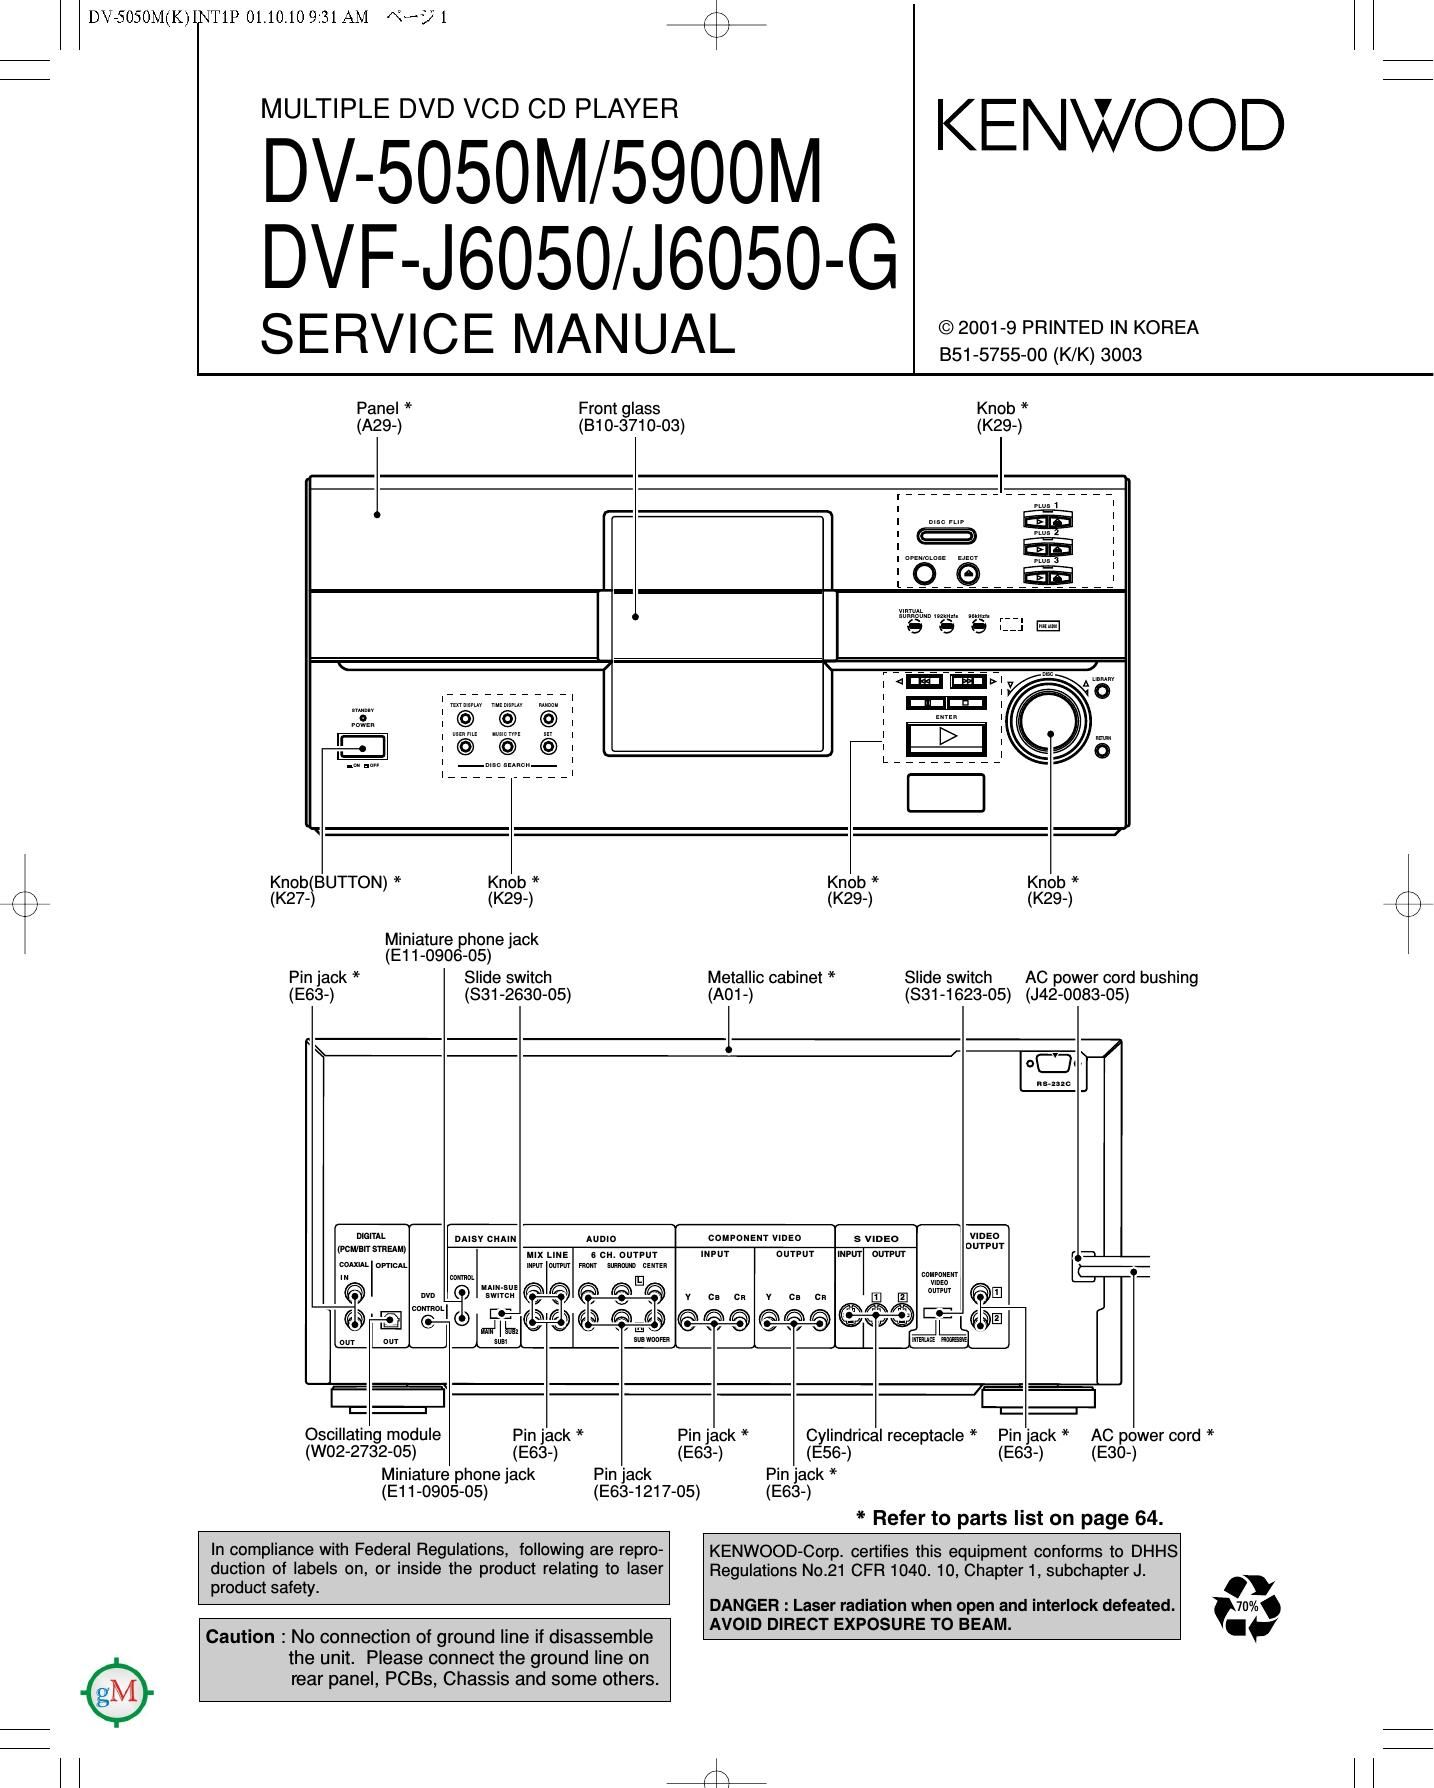 Kenwood DV 5900 M Service Manual